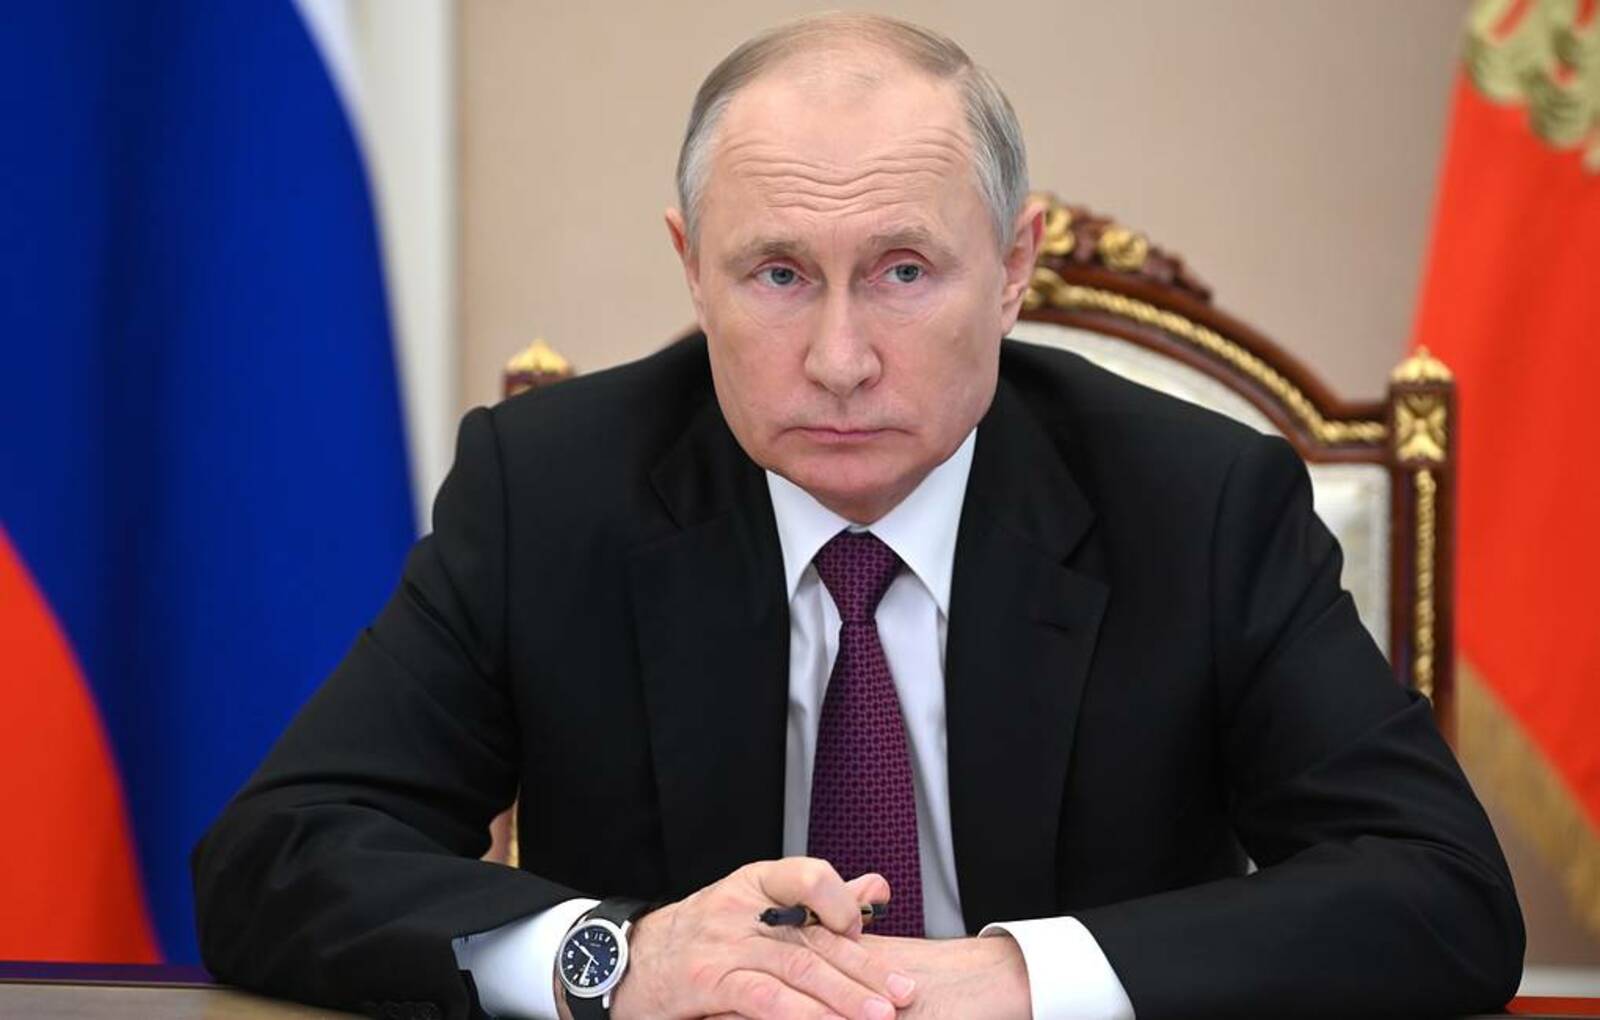 Владимир Путин выступил с важнейшими заявлениями на пленарном заседании клуба «Валдай»